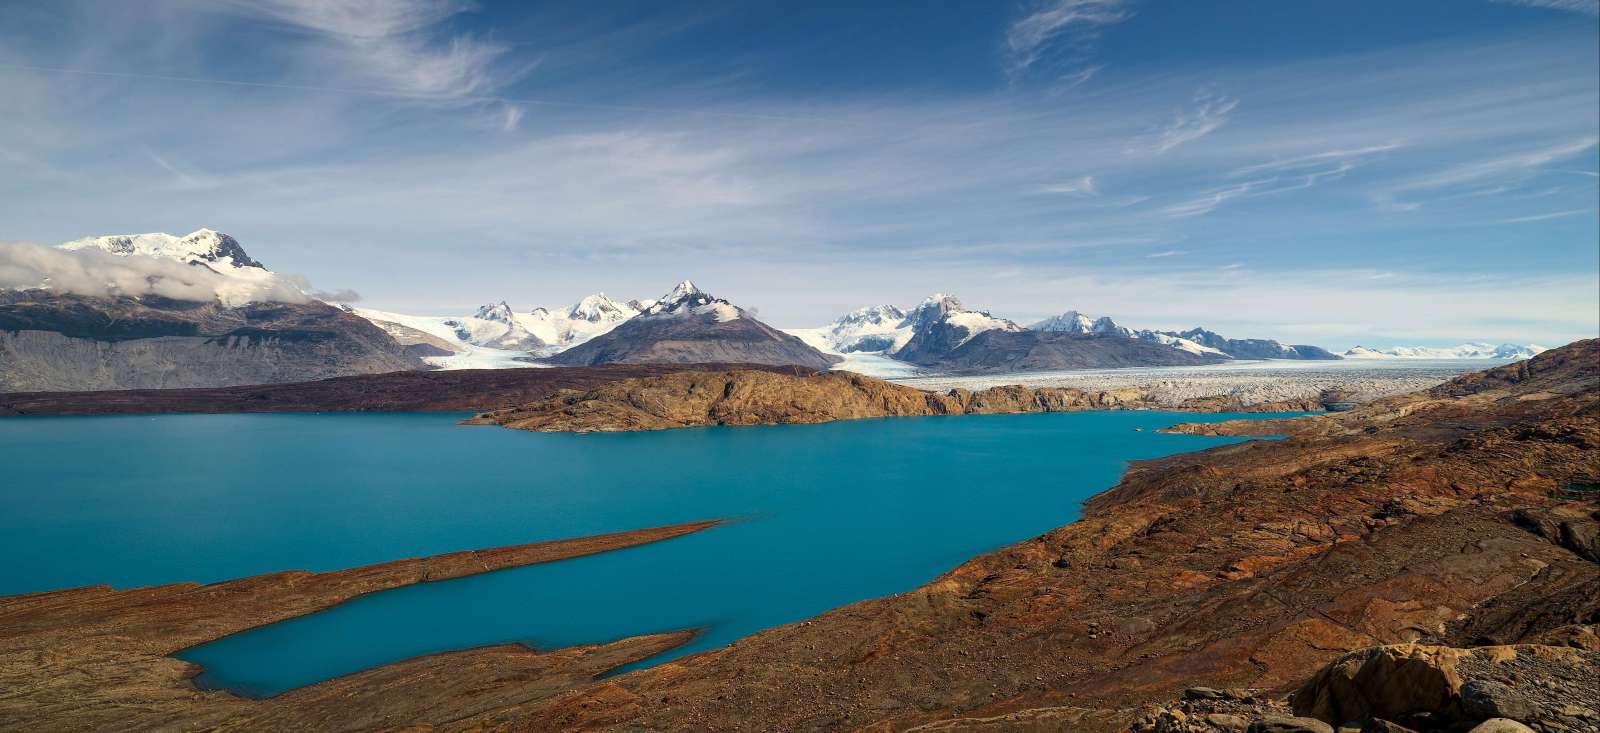 Voyage roadtrip - Rendez-vous en Patagonie